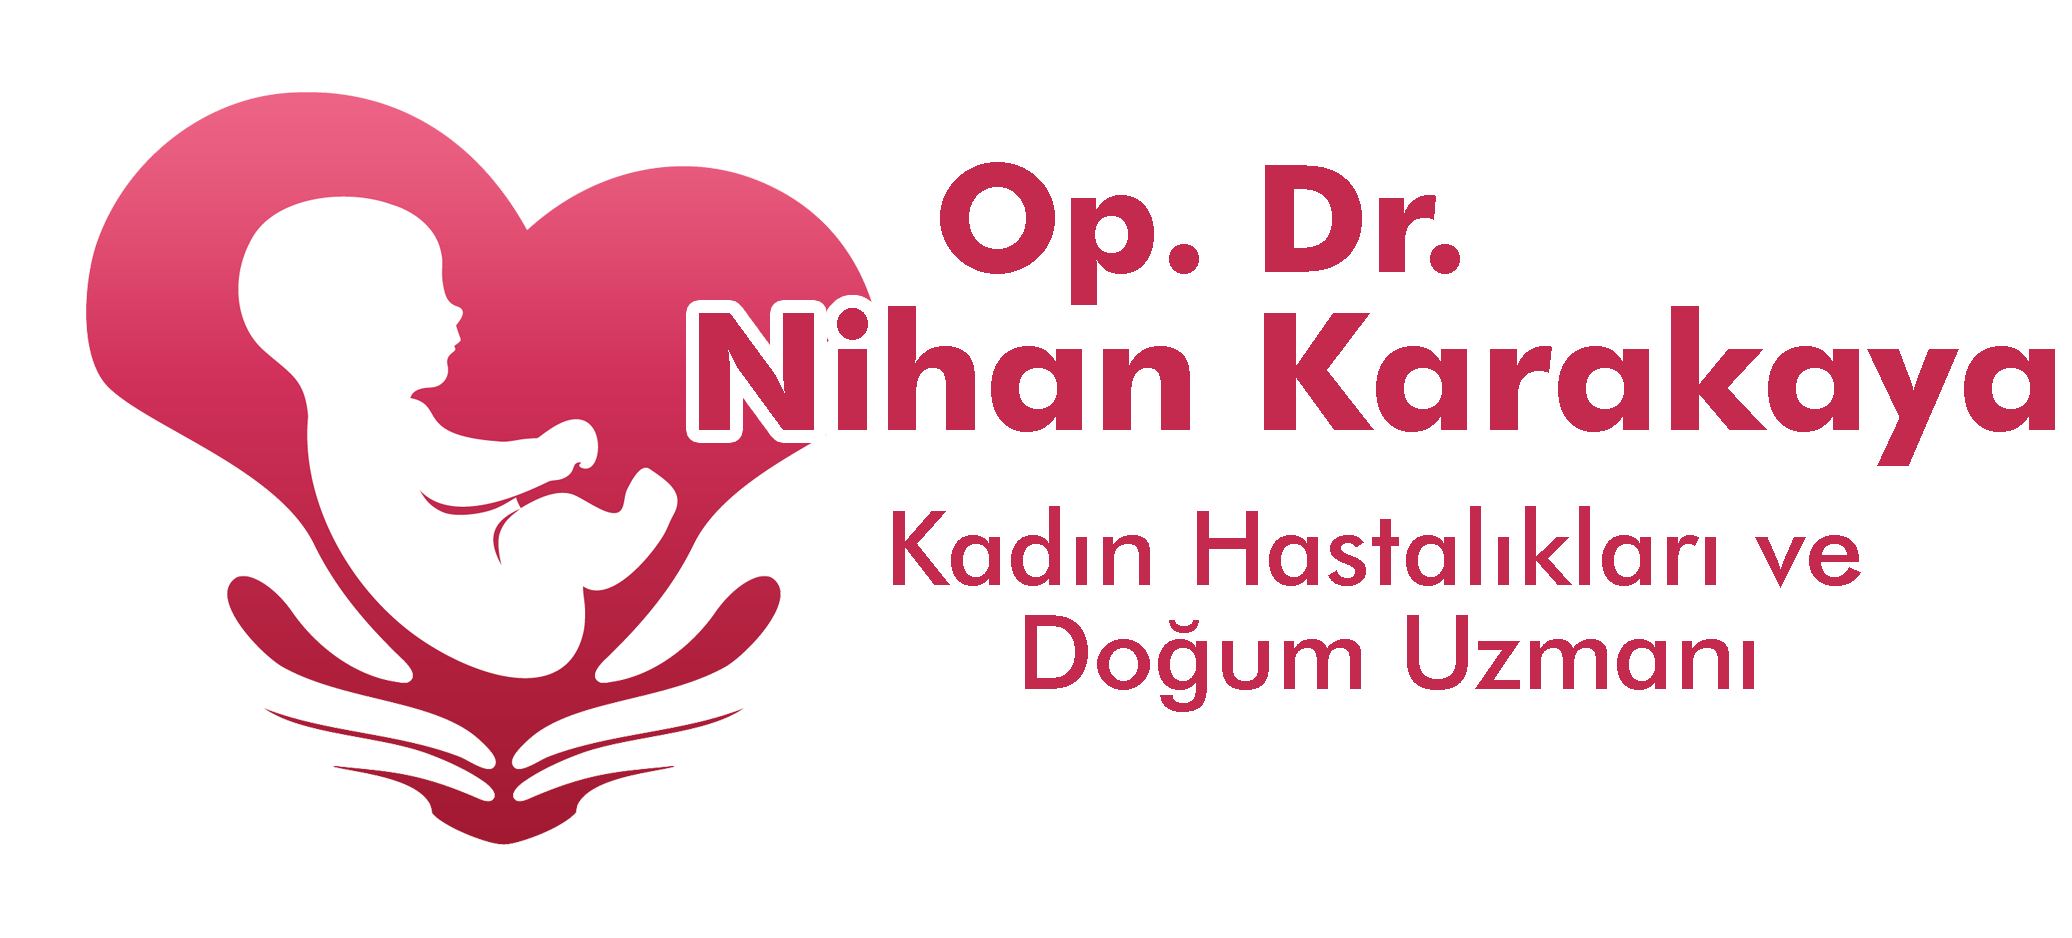 Op. Dr. Nihan Karakaya